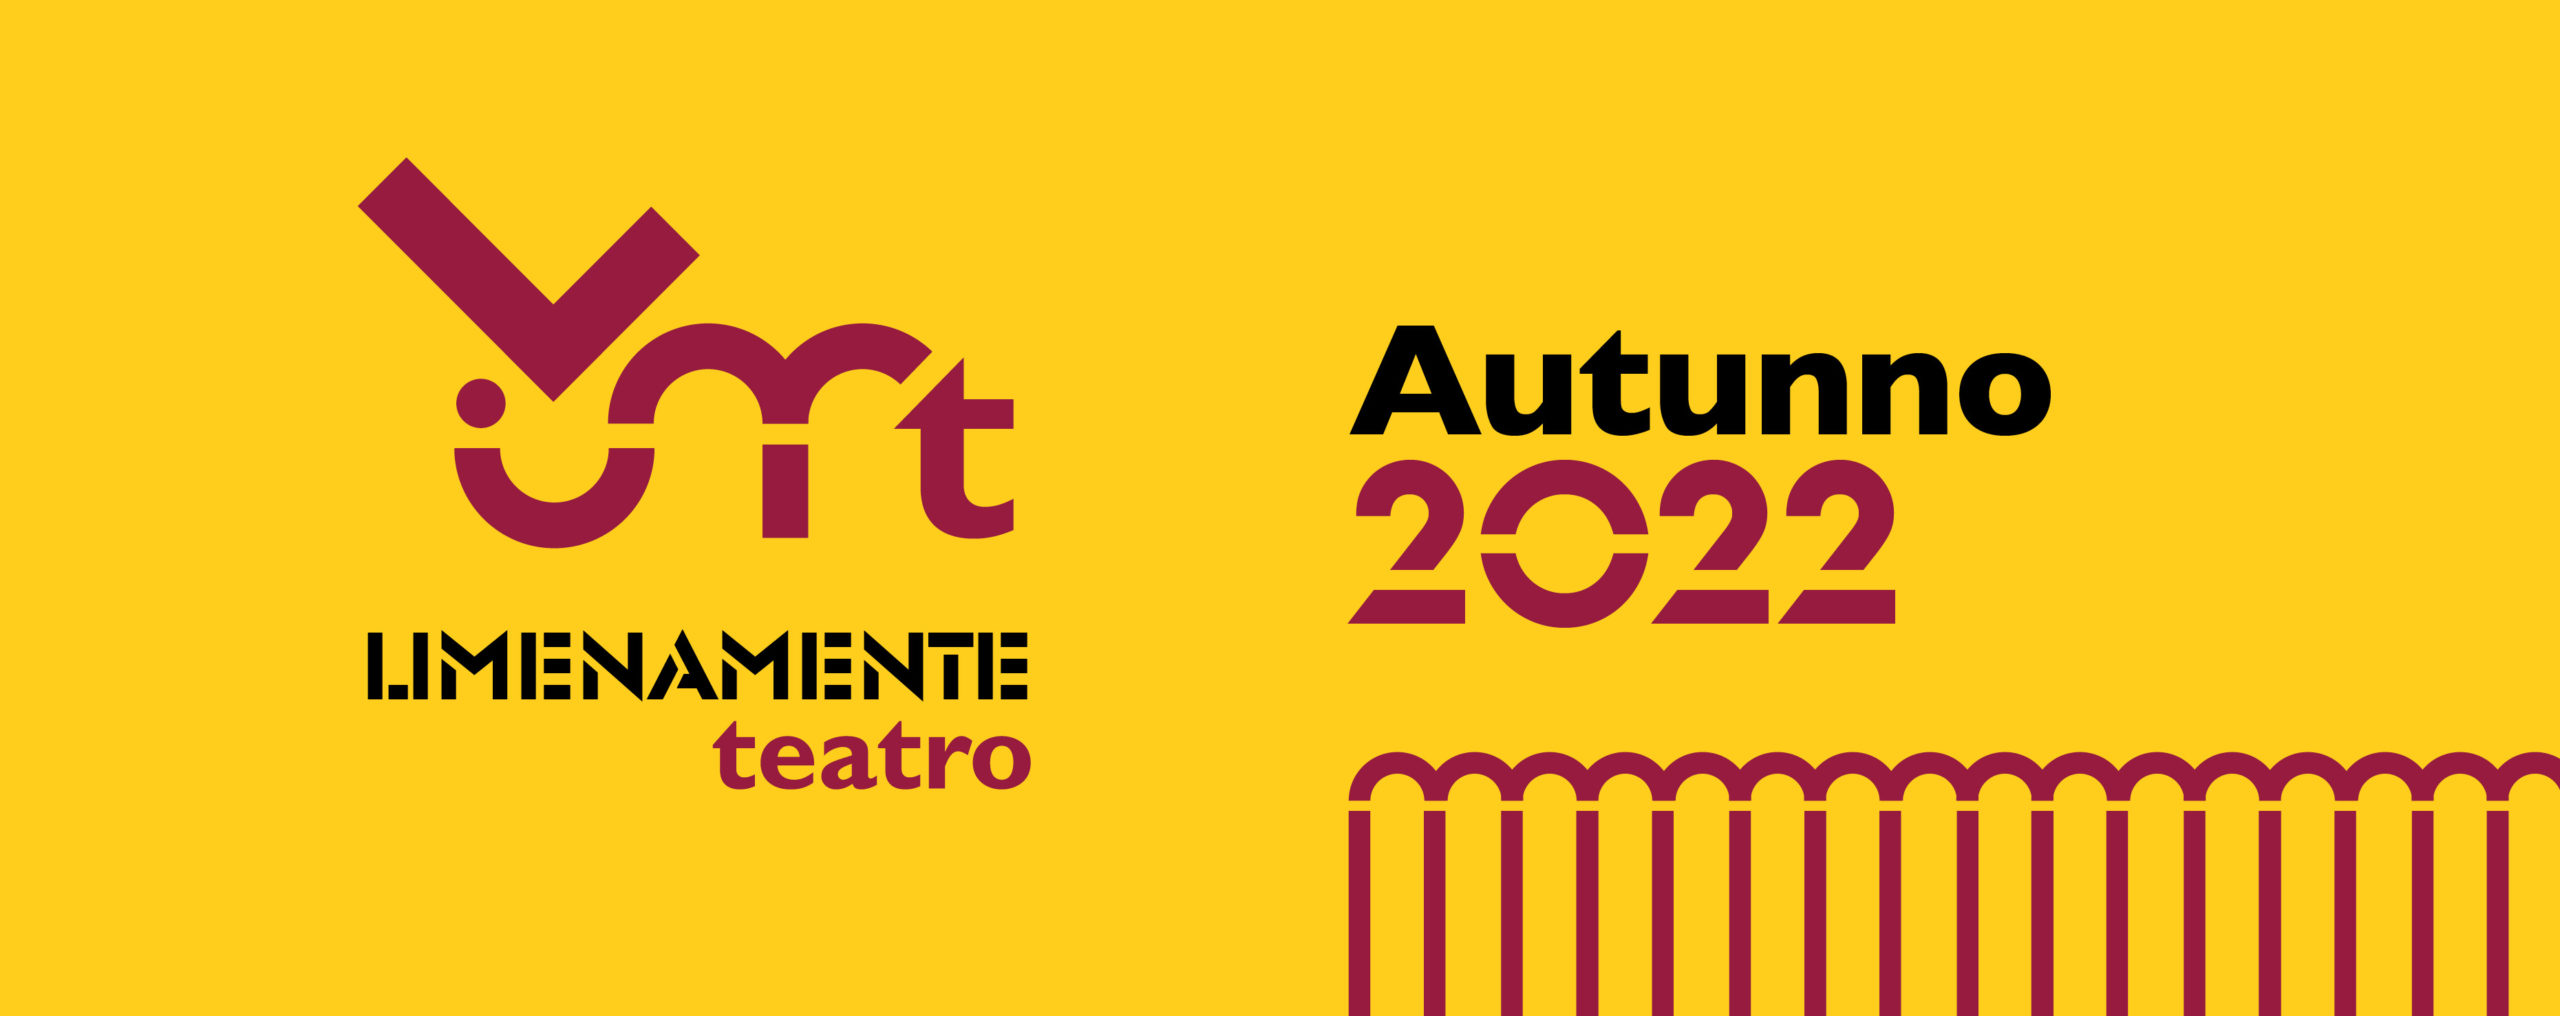 Limenamente Teatro Autunno 2022